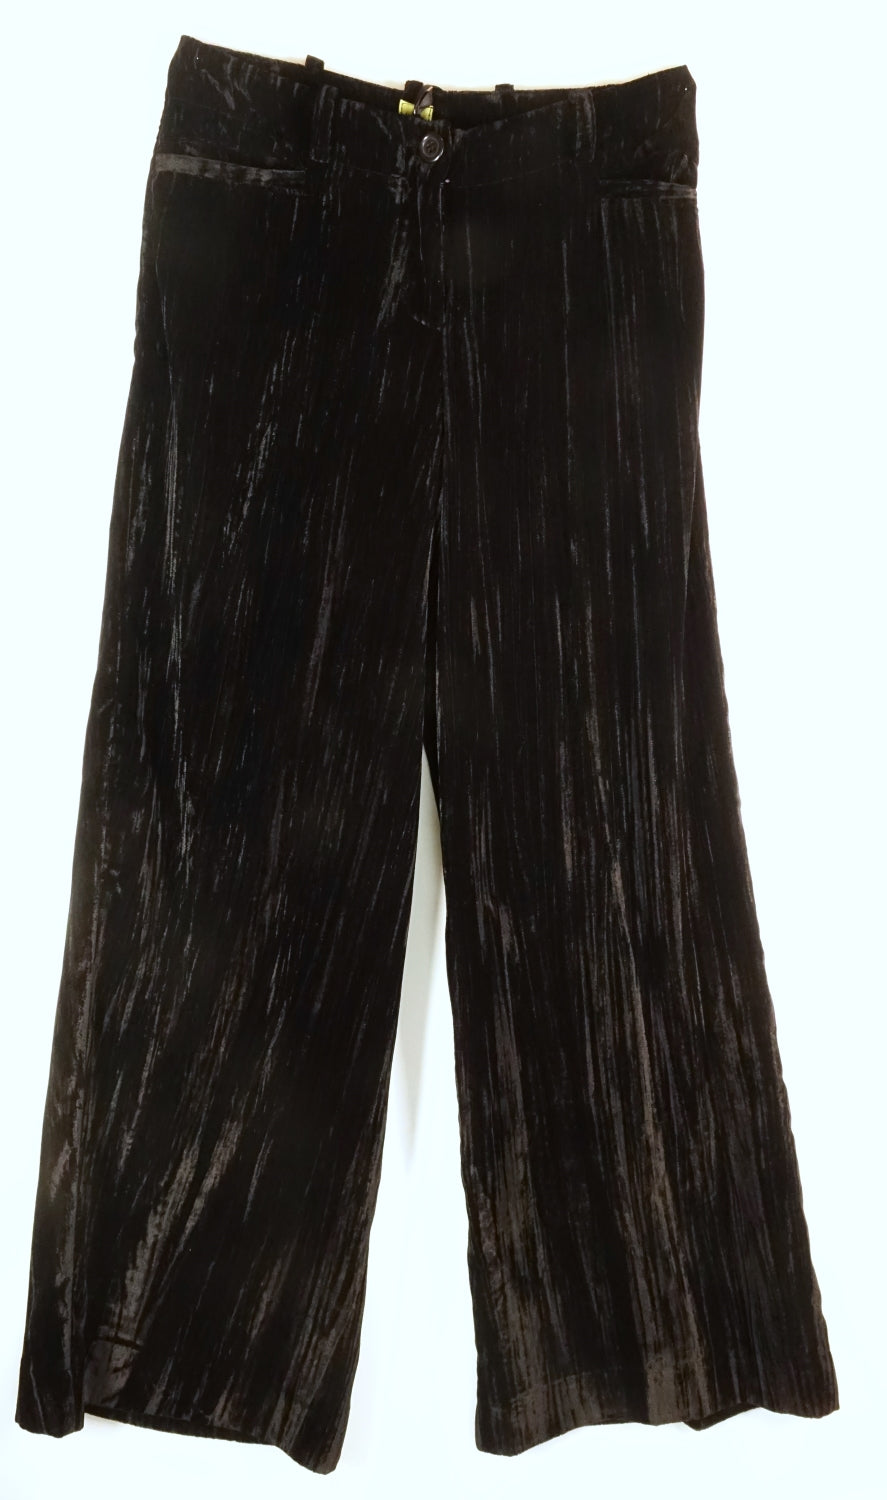 Osaka trousers in black speckled velvet